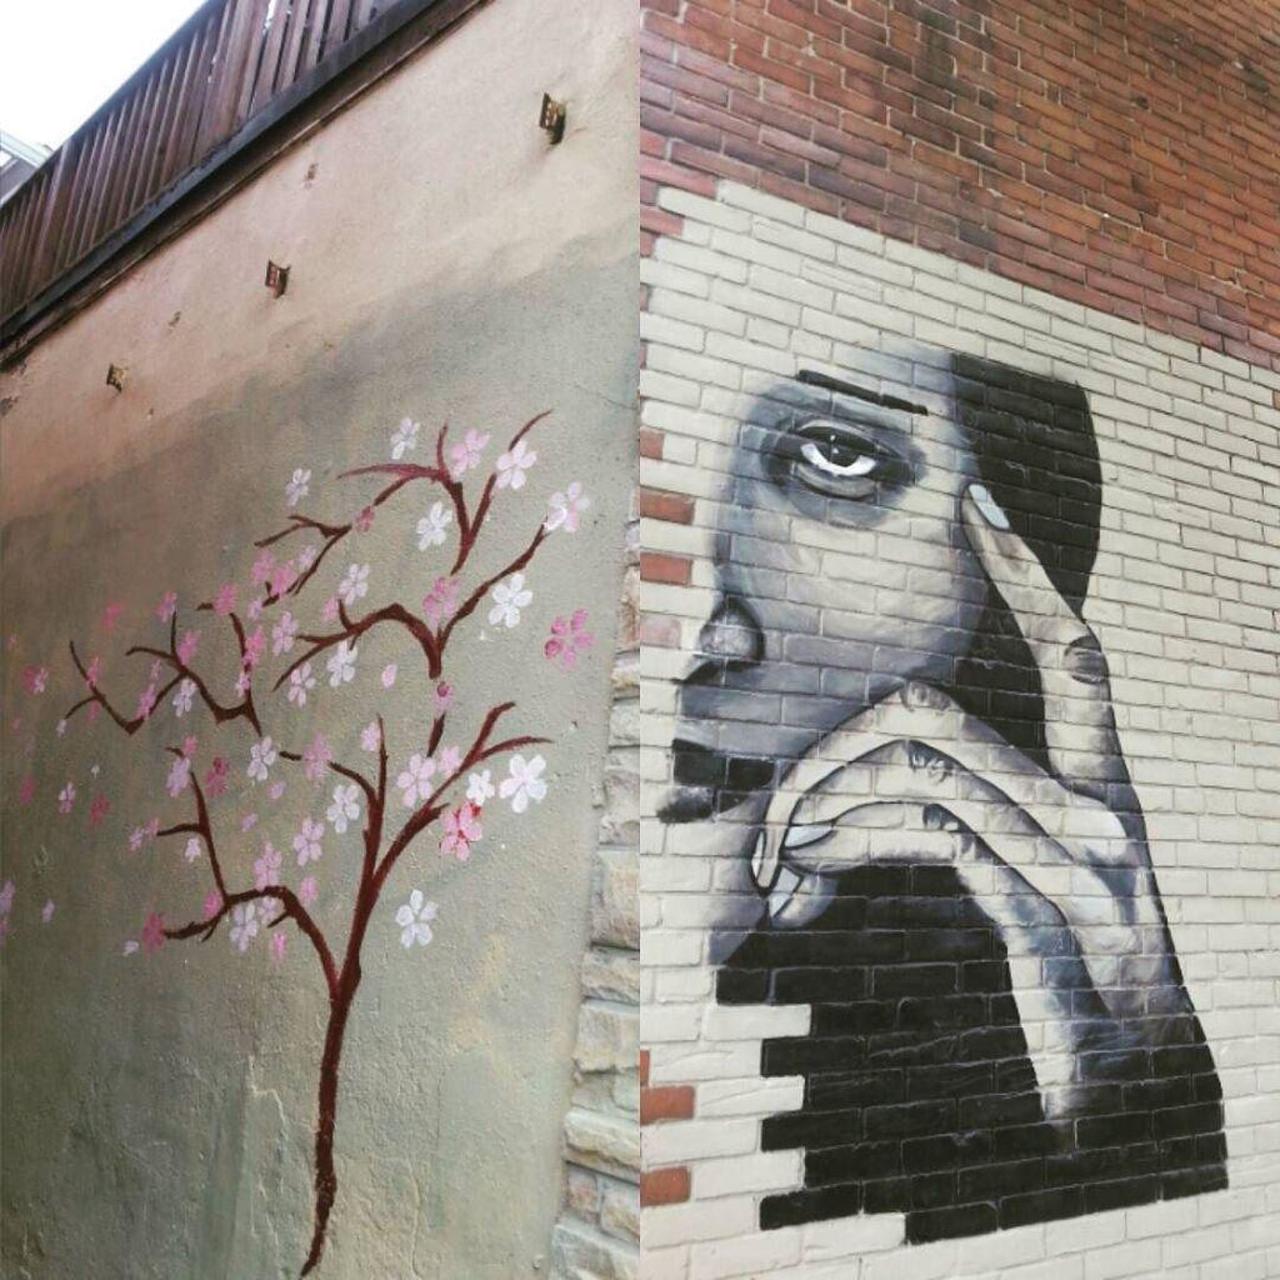 RT @artpushr: via #ubax333 "http://bit.ly/1JSwmQg" #graffiti #streetart http://t.co/SERJylU8Pz